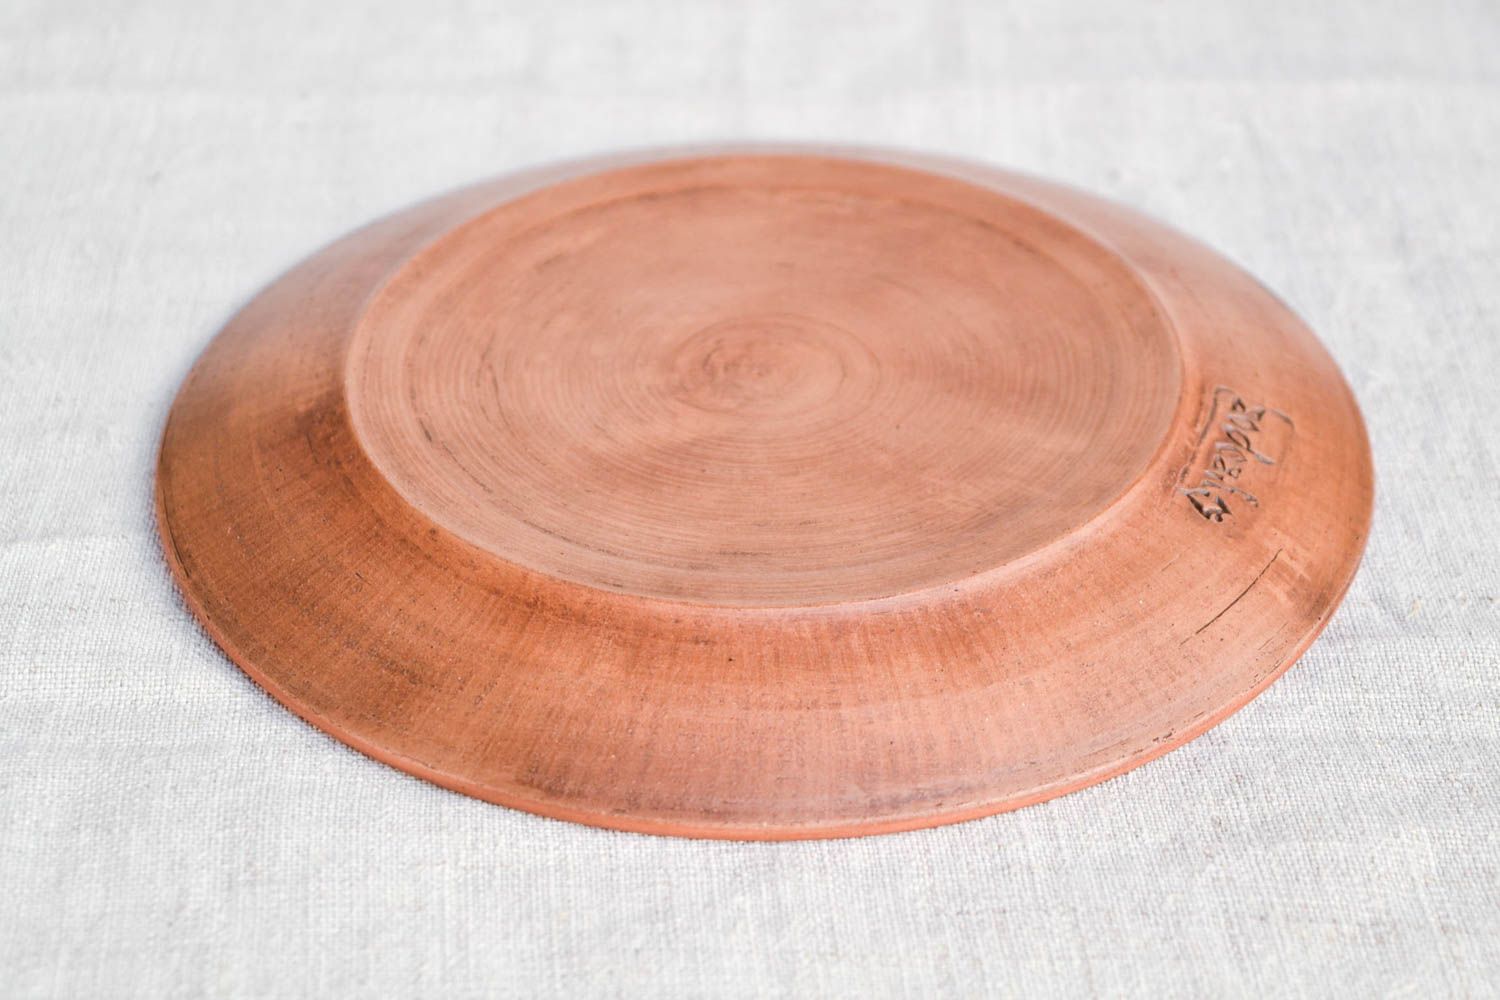 Handmade Keramik Teller Haus Dekor Design Teller Tisch Dekor klein flach schön foto 5